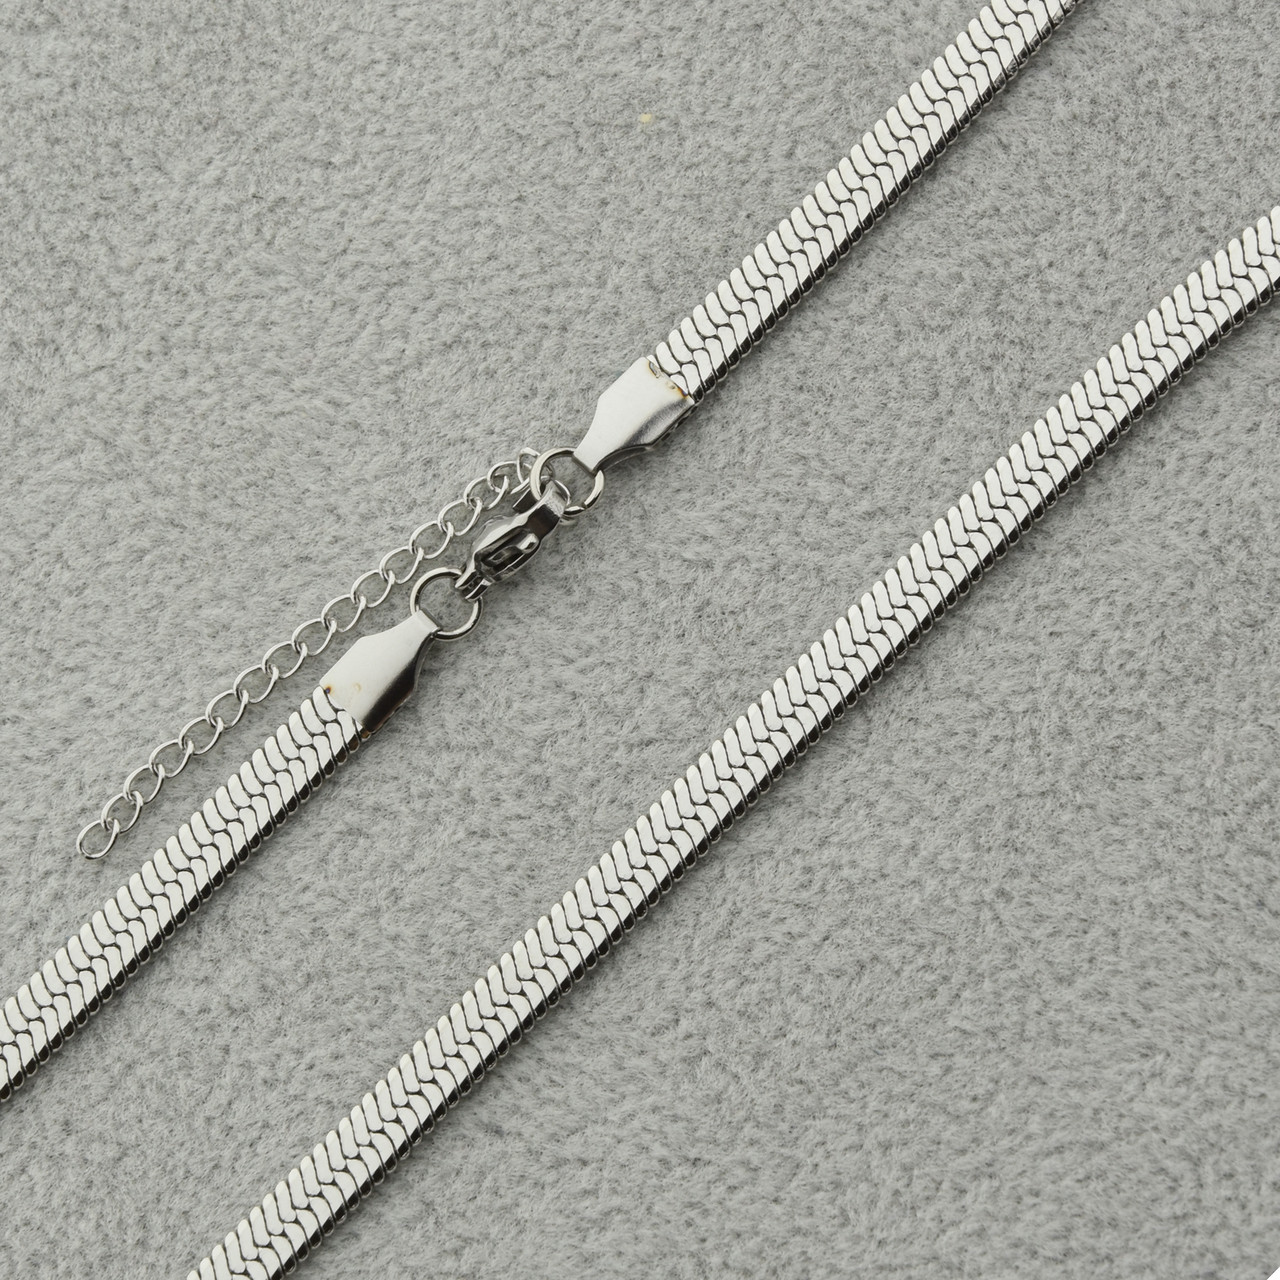 Цепь мужская Снейк широкий от Stainless Steel из медицинской хирургической стали длина 55 см 5 мм цвет серебро